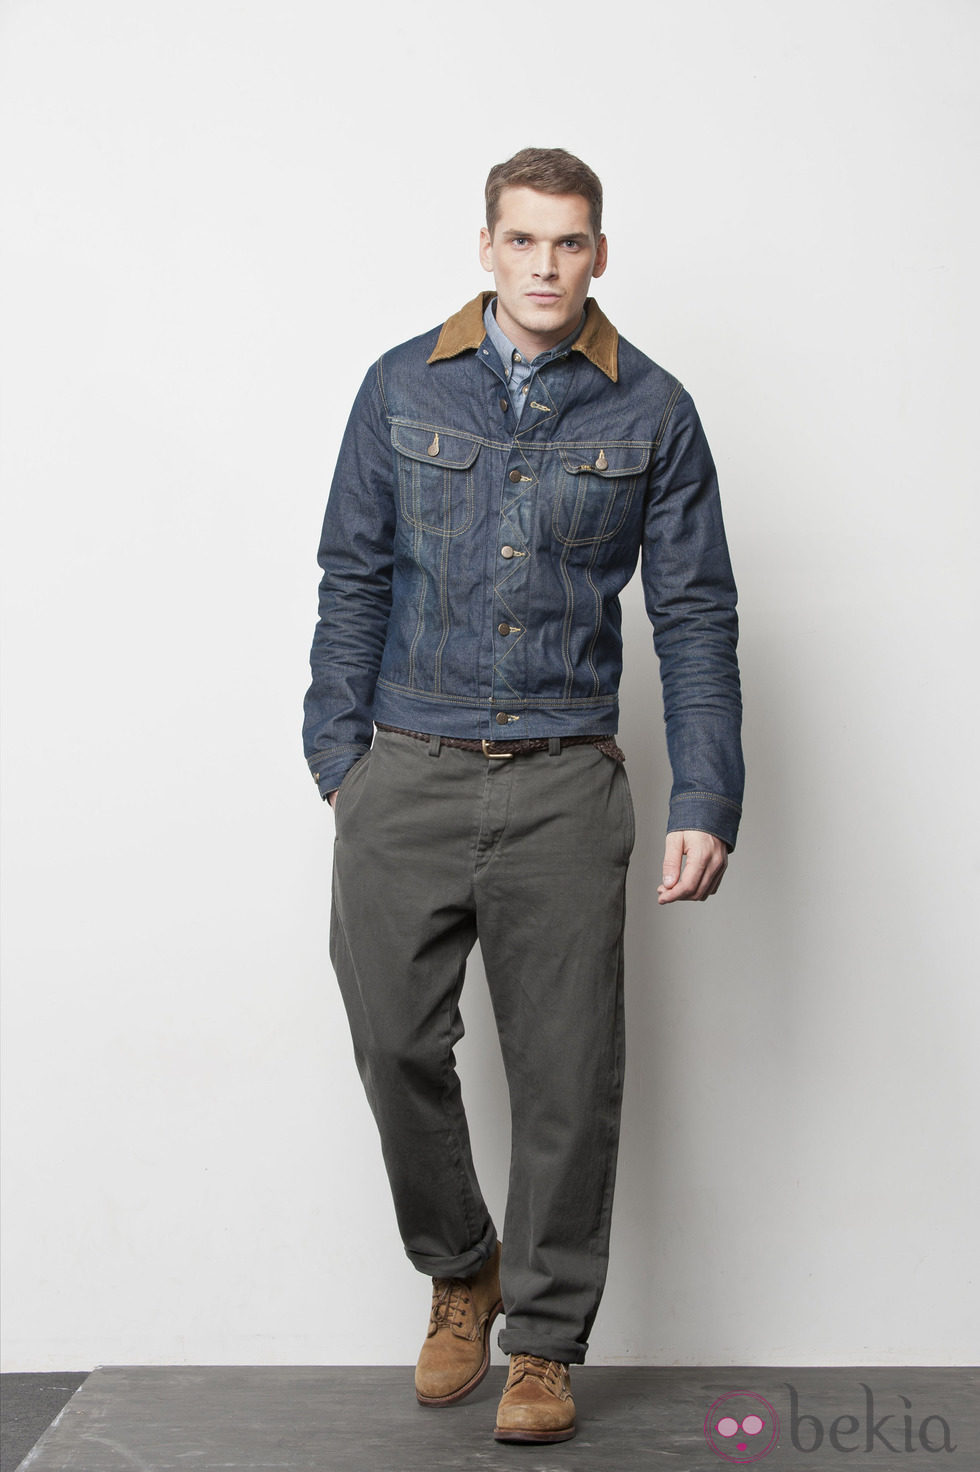 Pantalón gris plomo de la colección otoño/invierno 2012/2013 de Lee para hombre